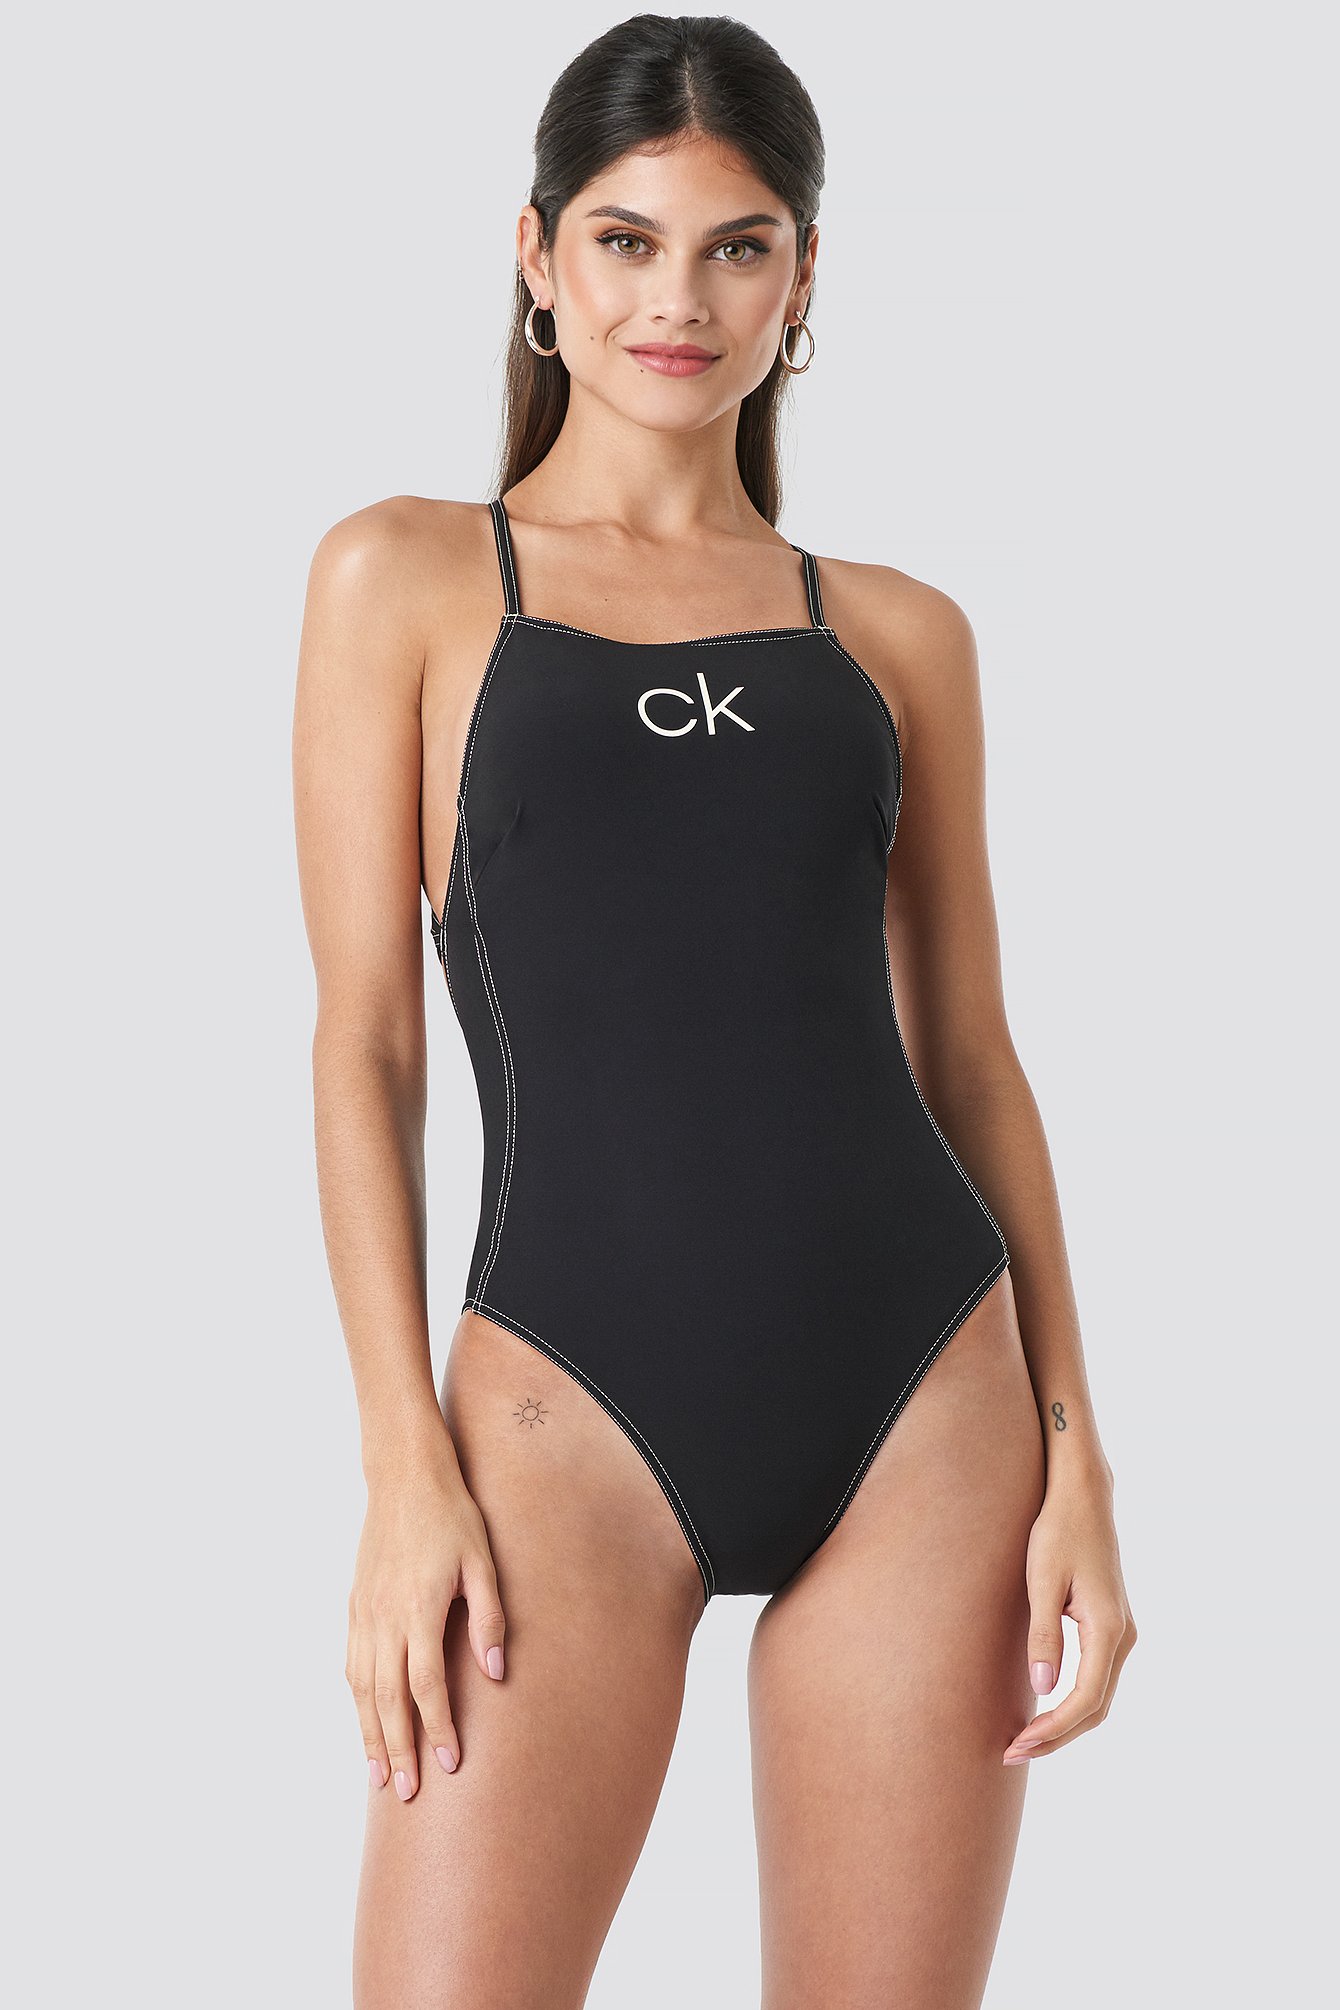 ck one piece swimsuit